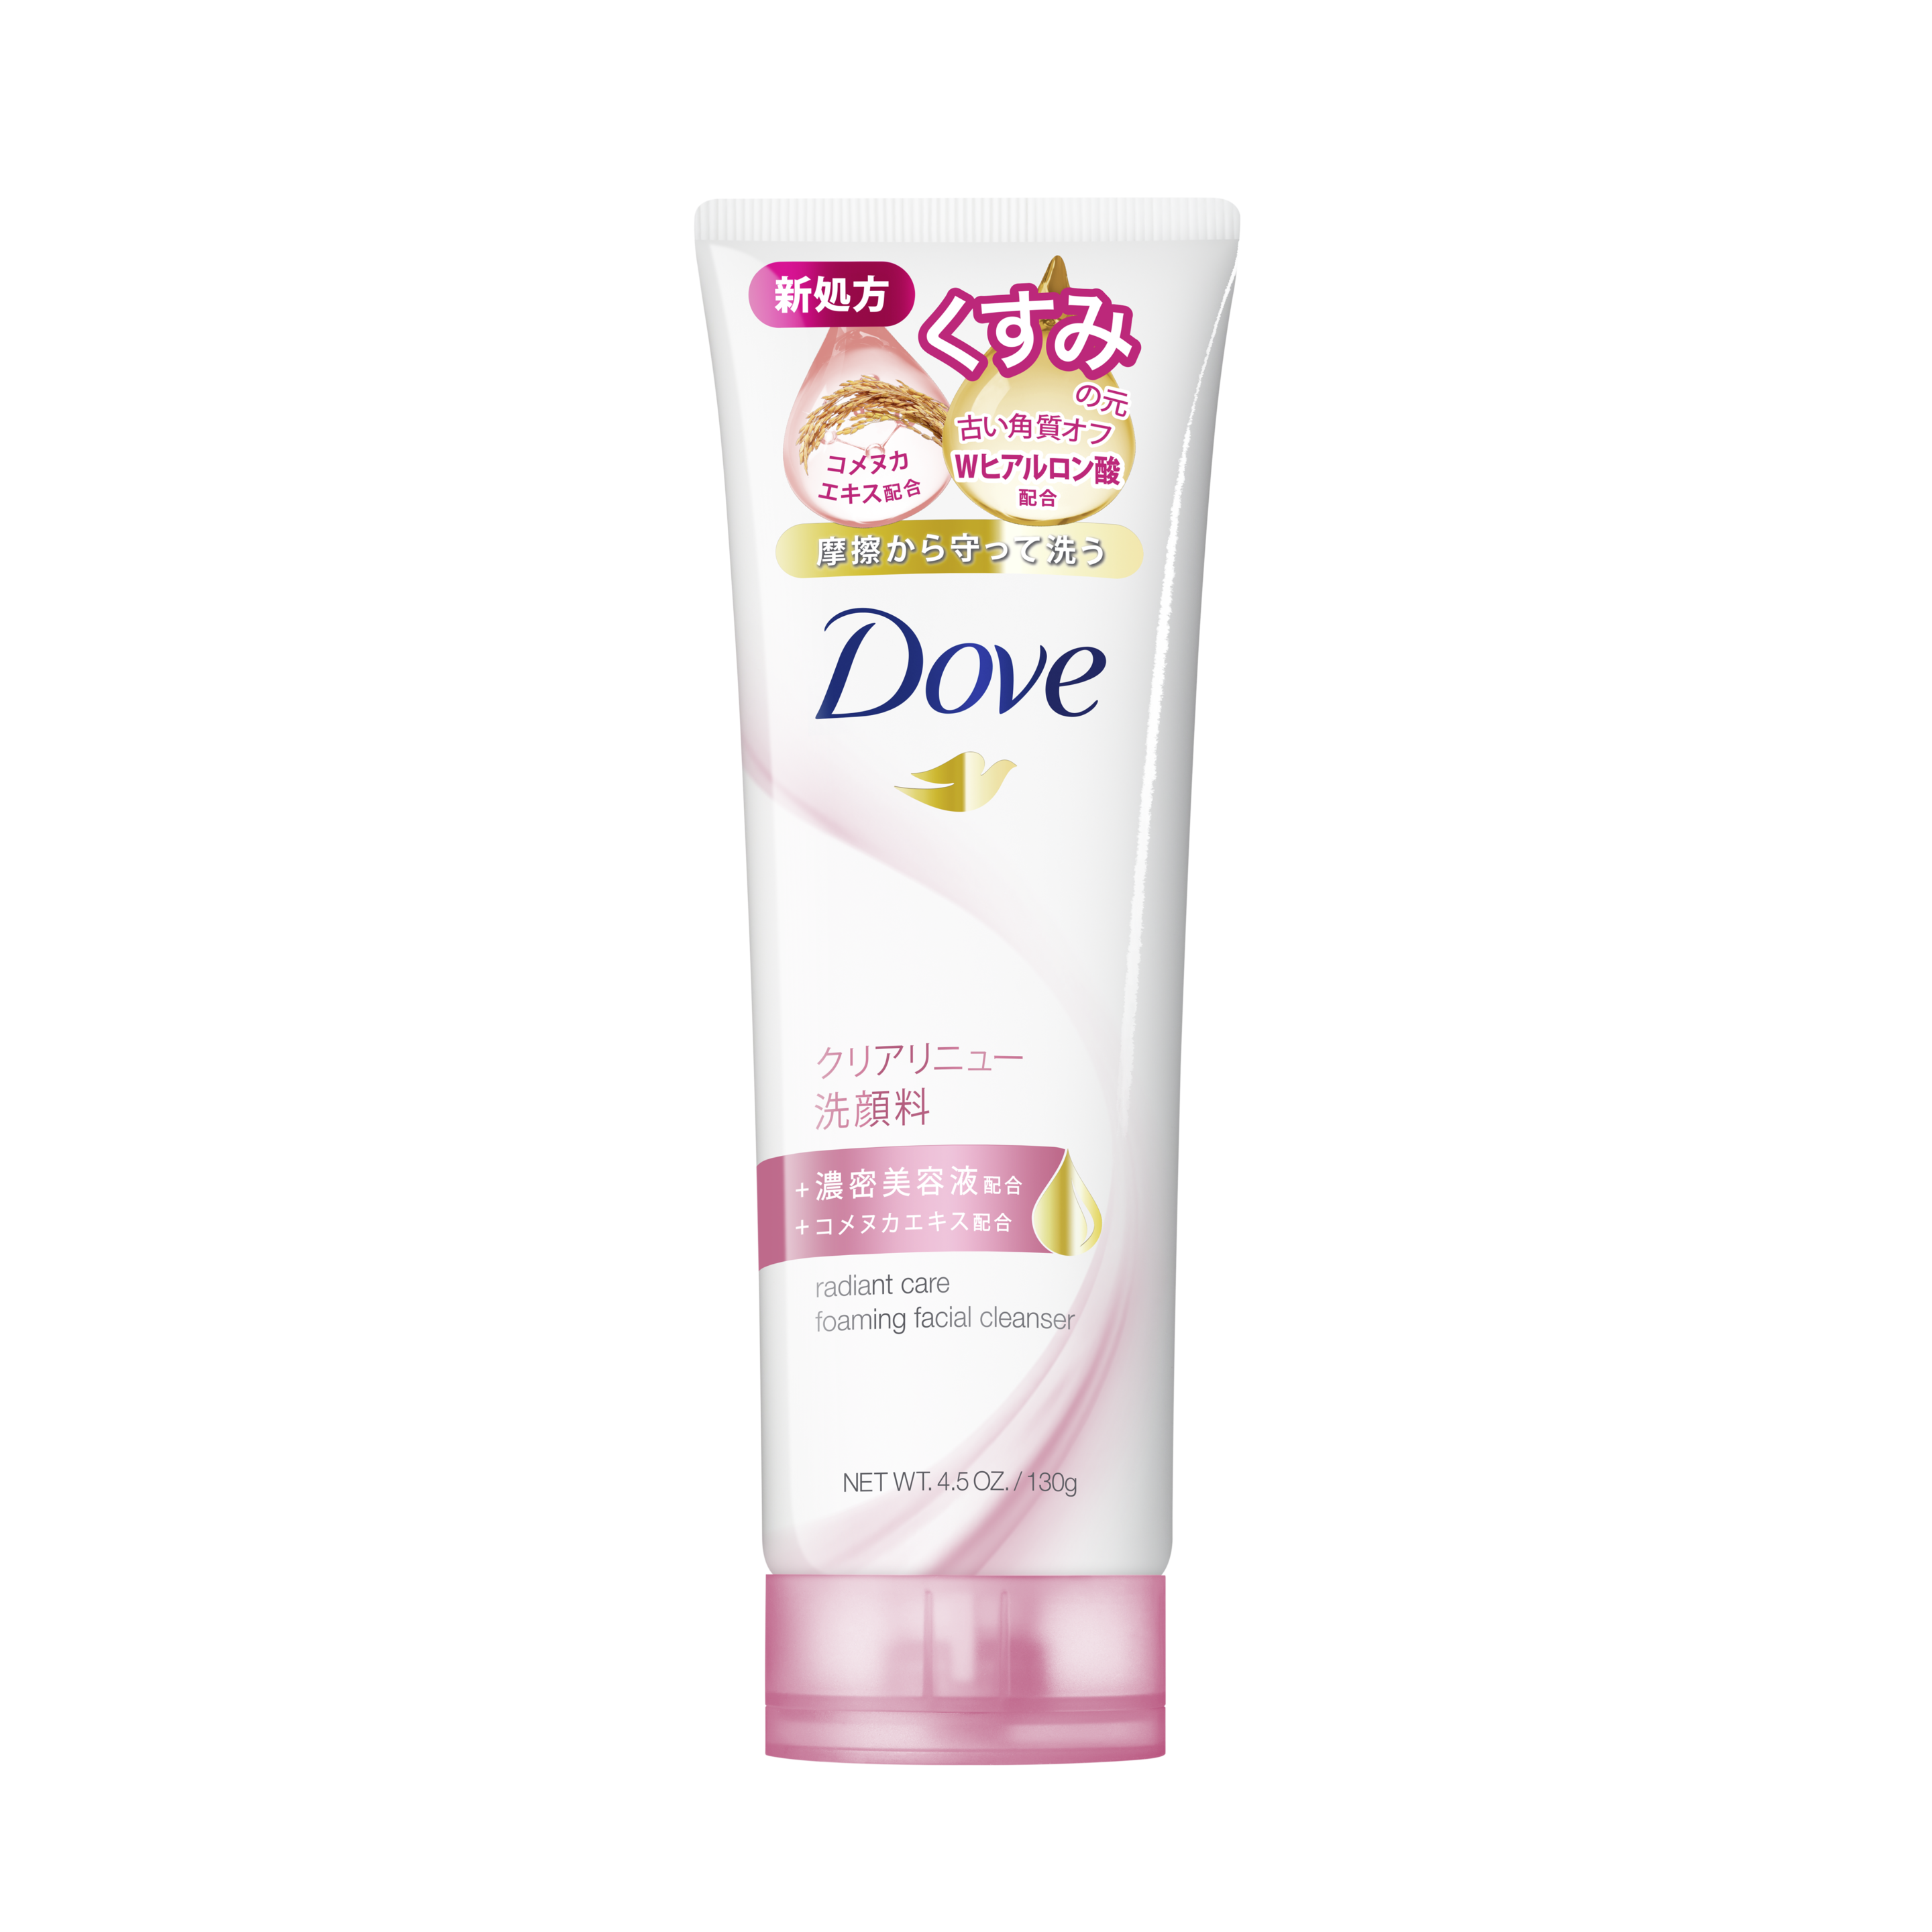 ダヴ(Dove) ディープピュア 洗顔料 130g×4個セット - 基礎化粧品